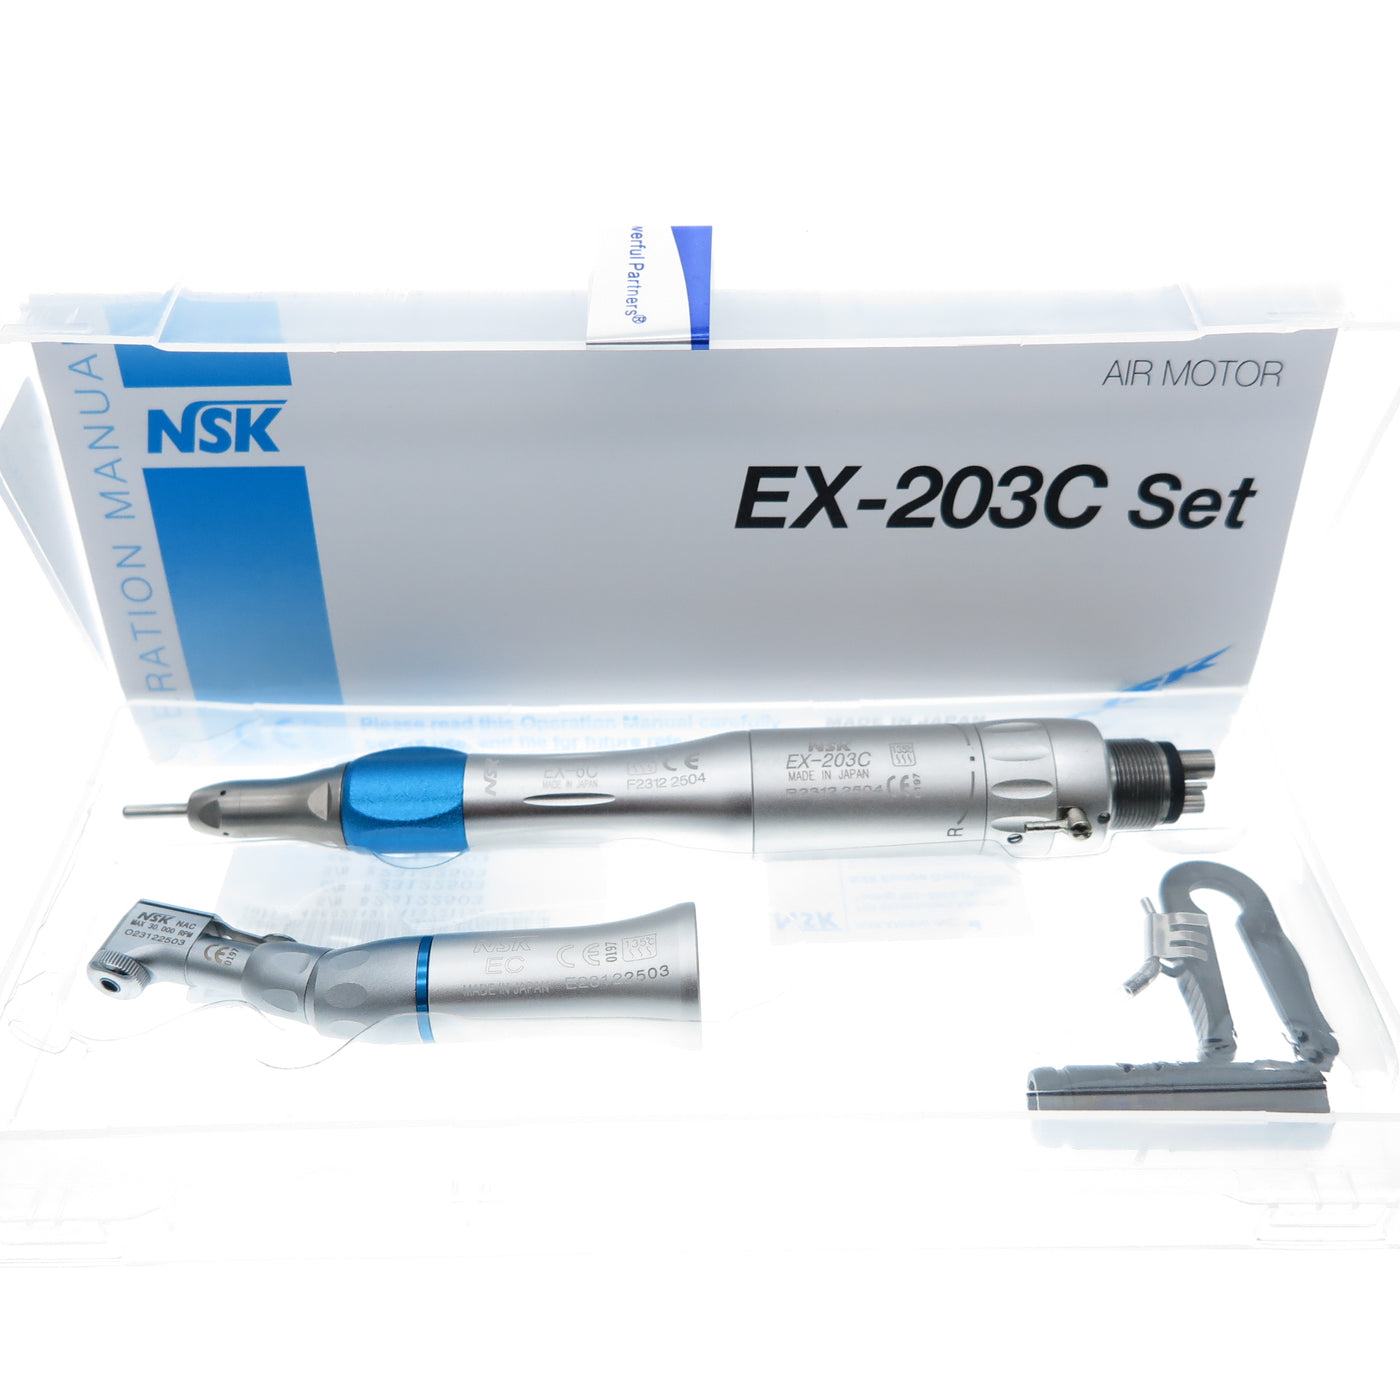 NSK EX-203 Micromotor-Complete set